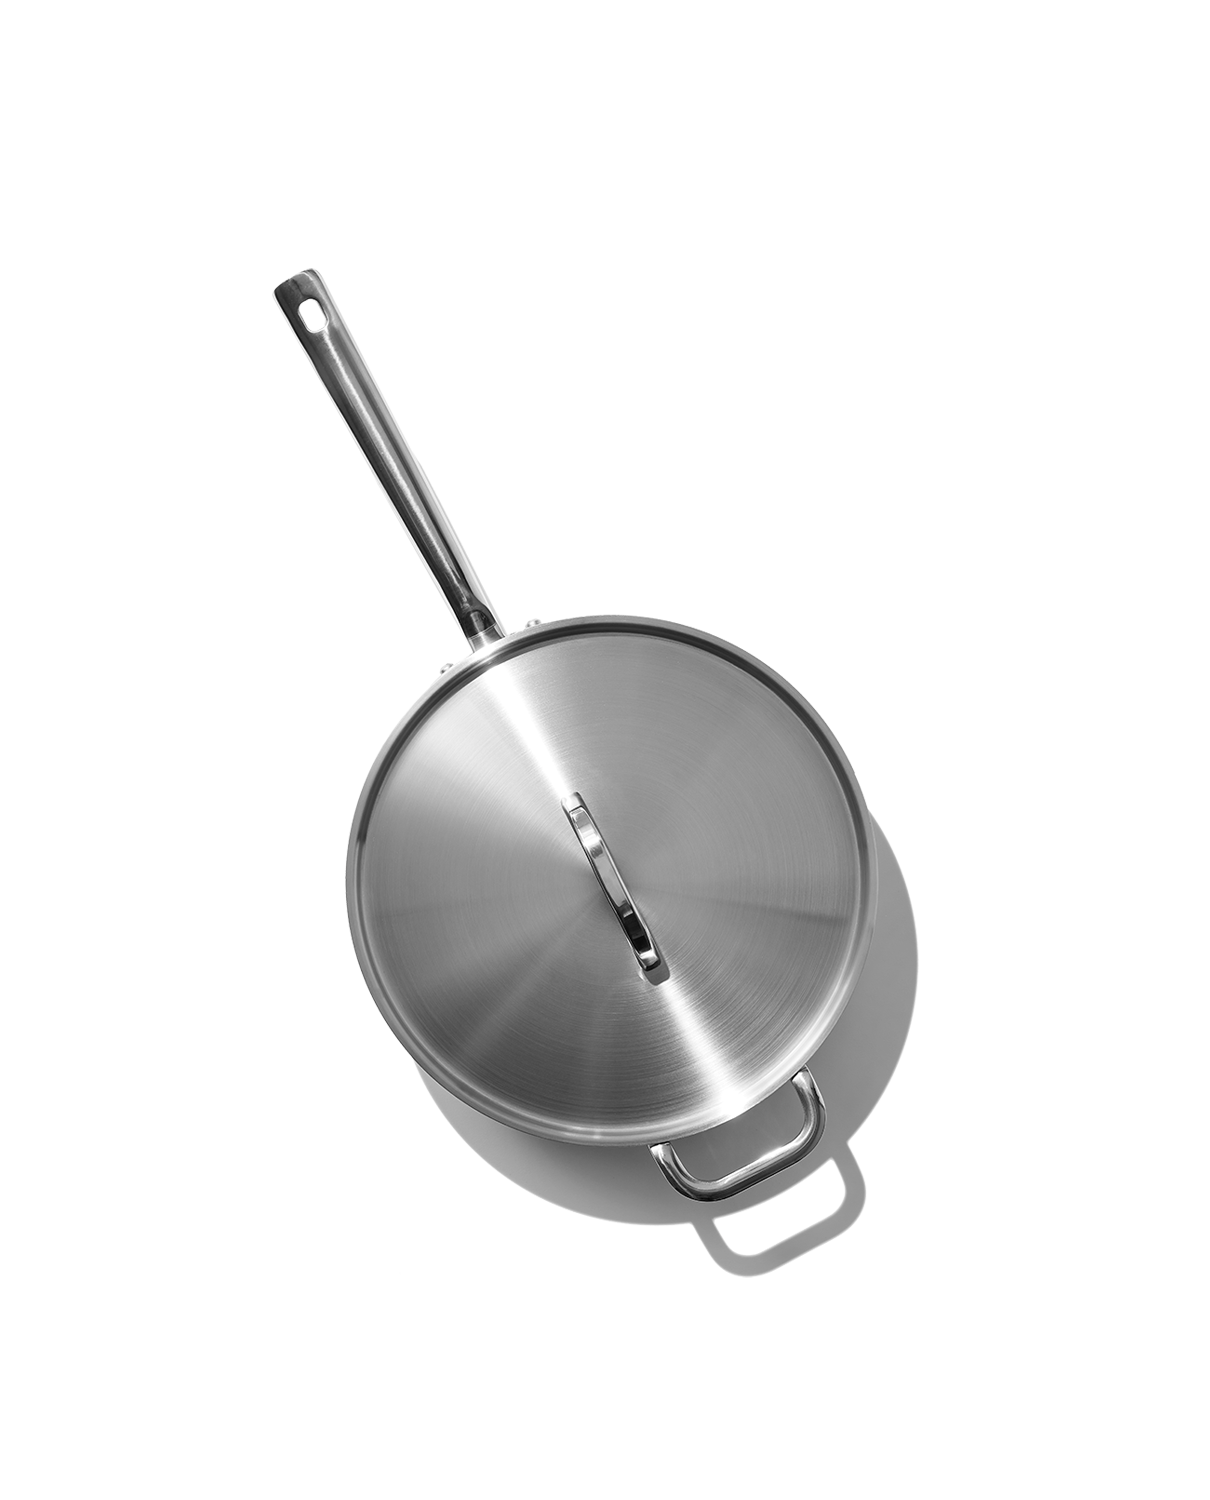 The Sauté Pan